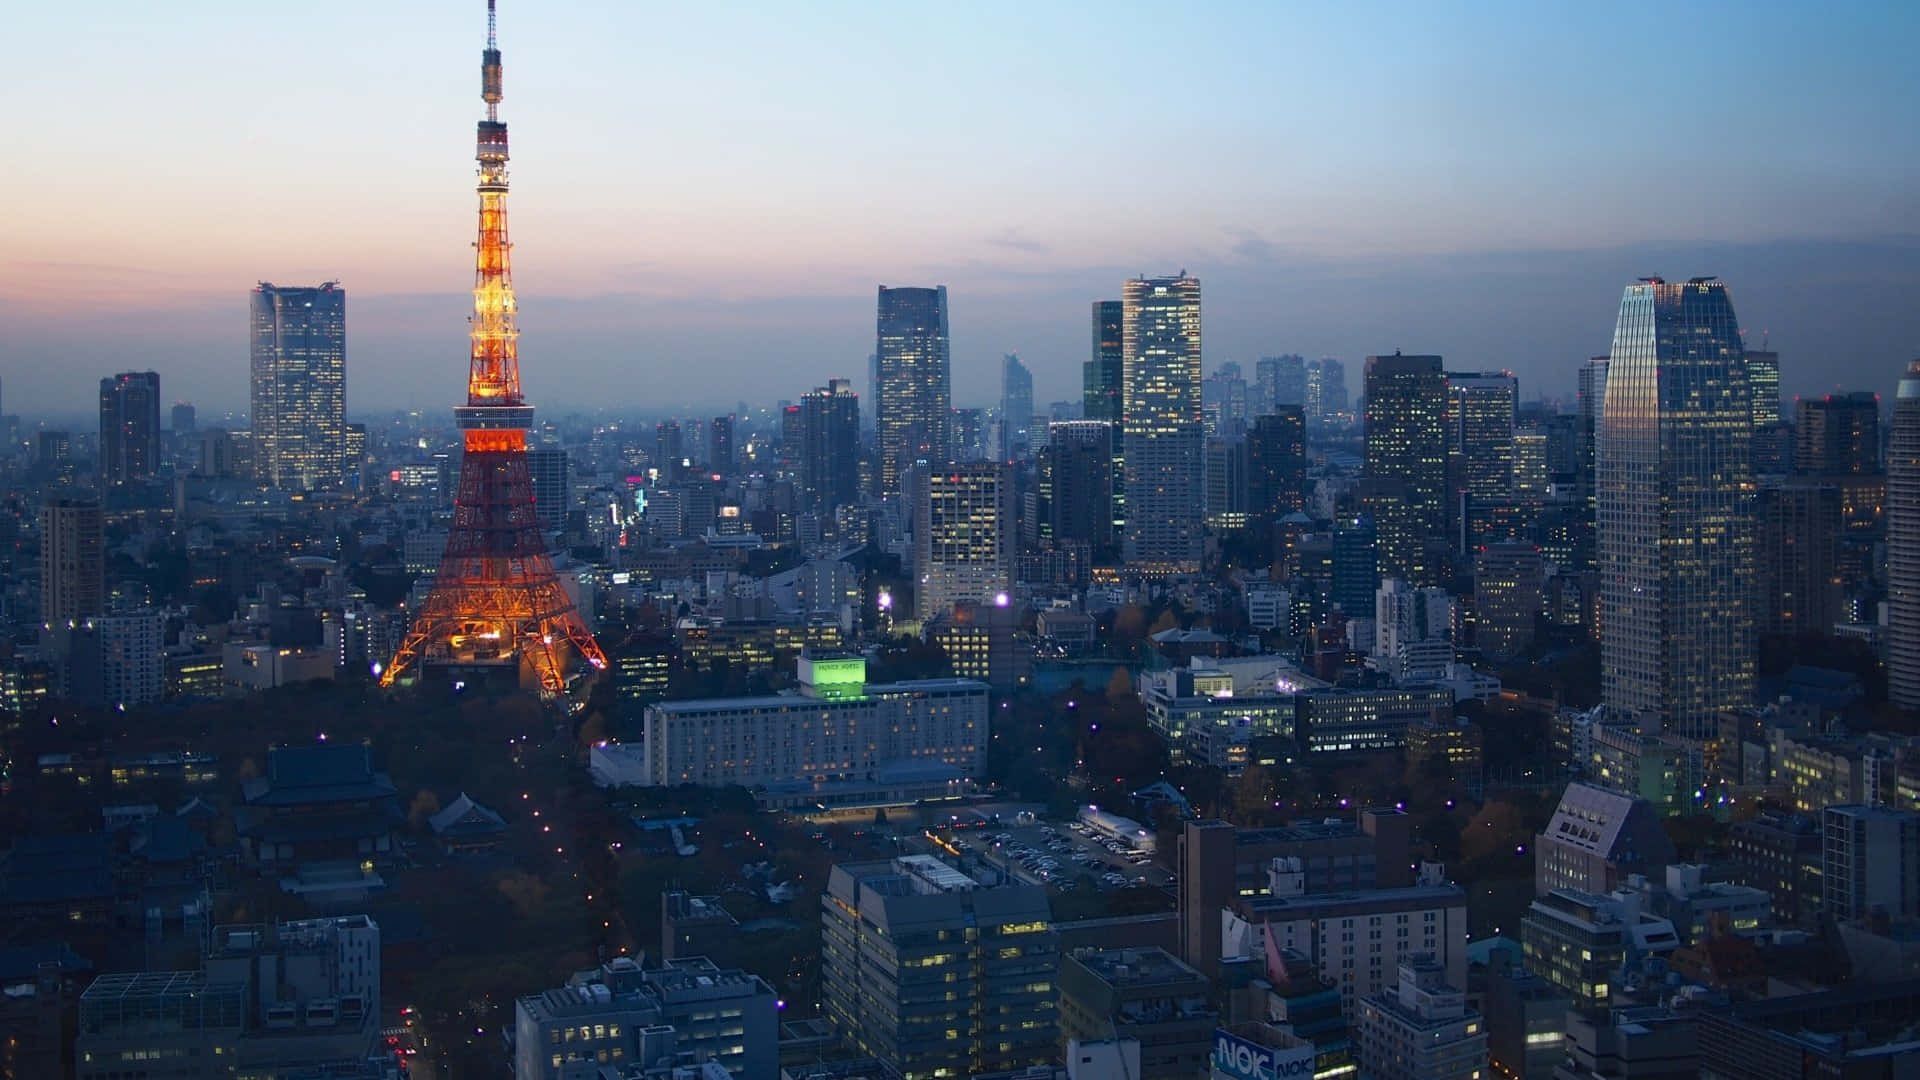 Fondode Pantalla De Tokio Brillante, Con La Torre De Tokio Entre La Ciudad.